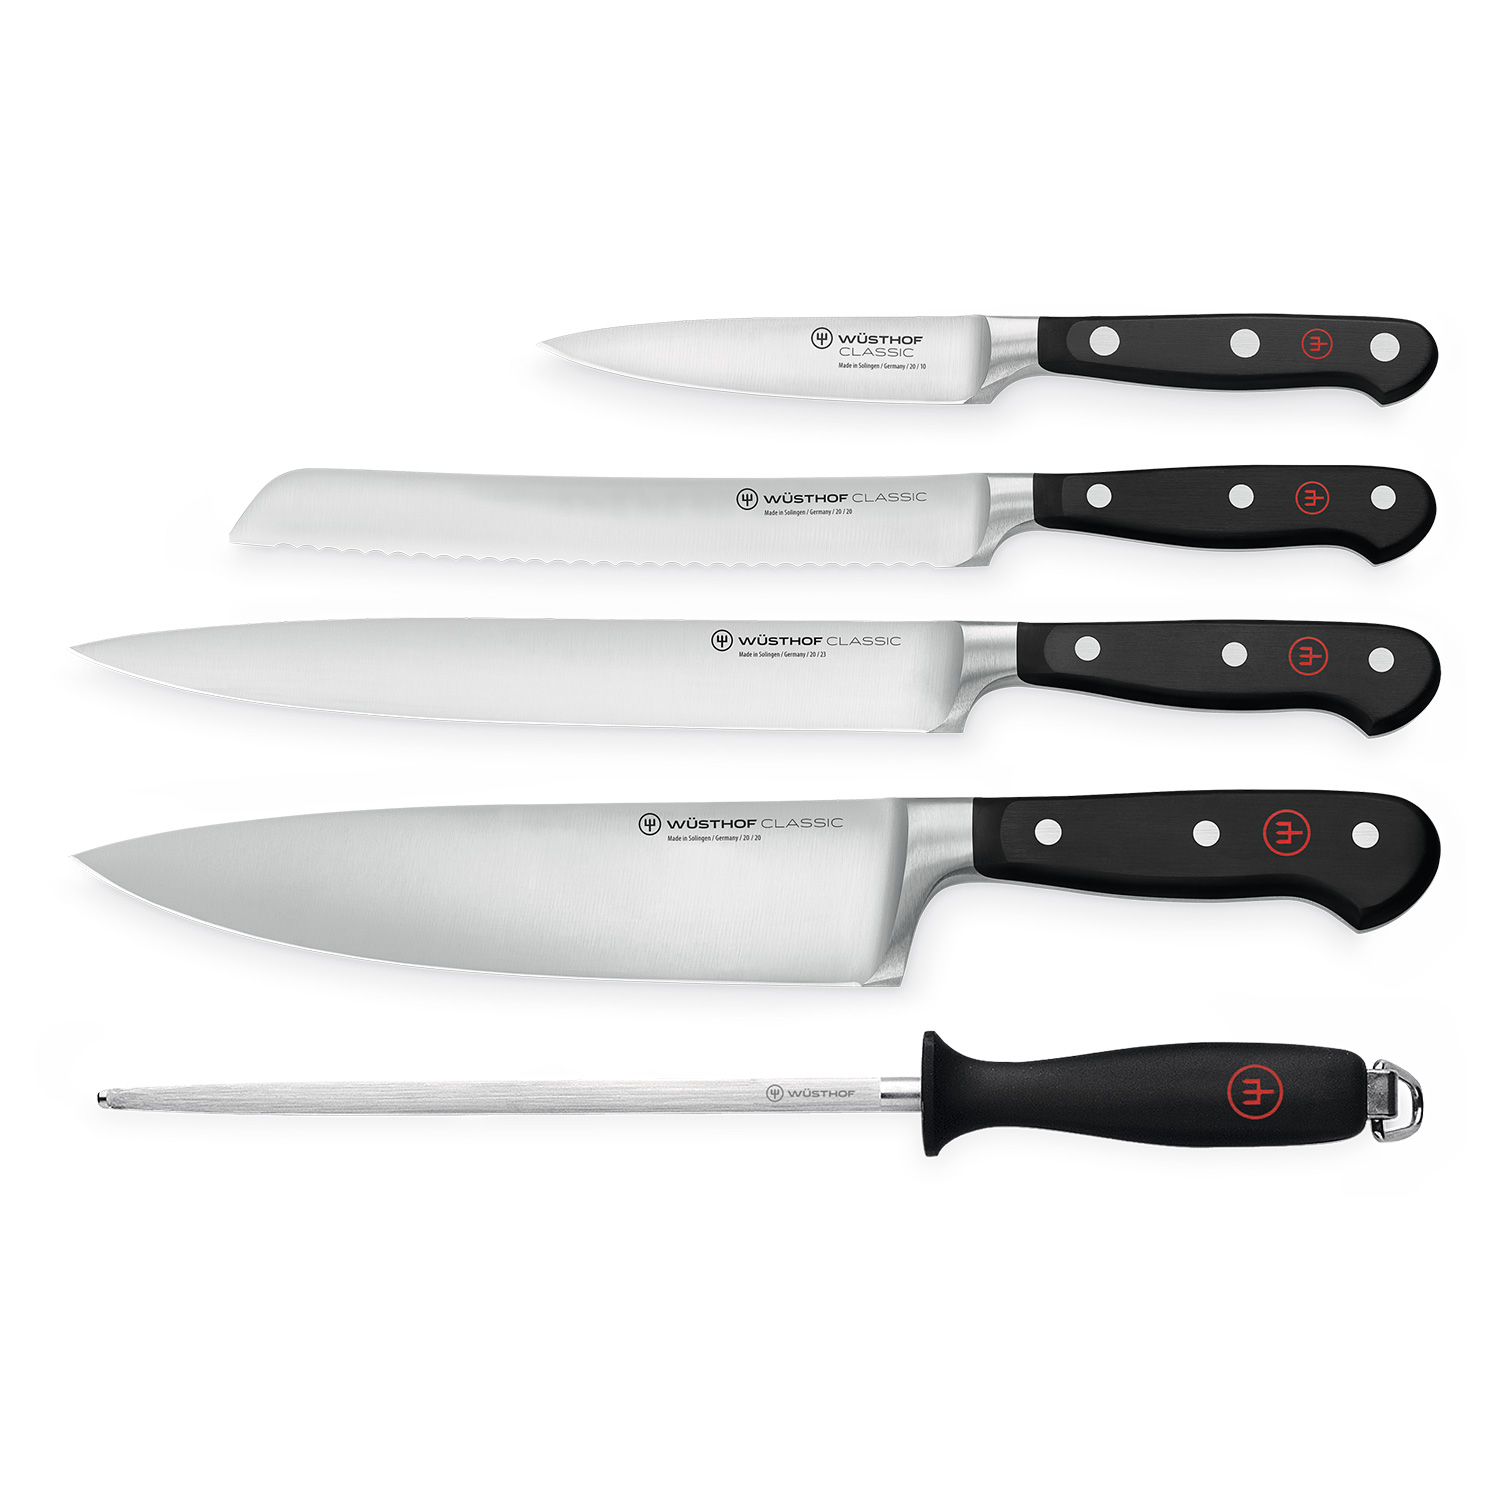 https://api-prod.royaldesign.se/api/products/image/2/wusthof-classic-knife-set-5-pack-0